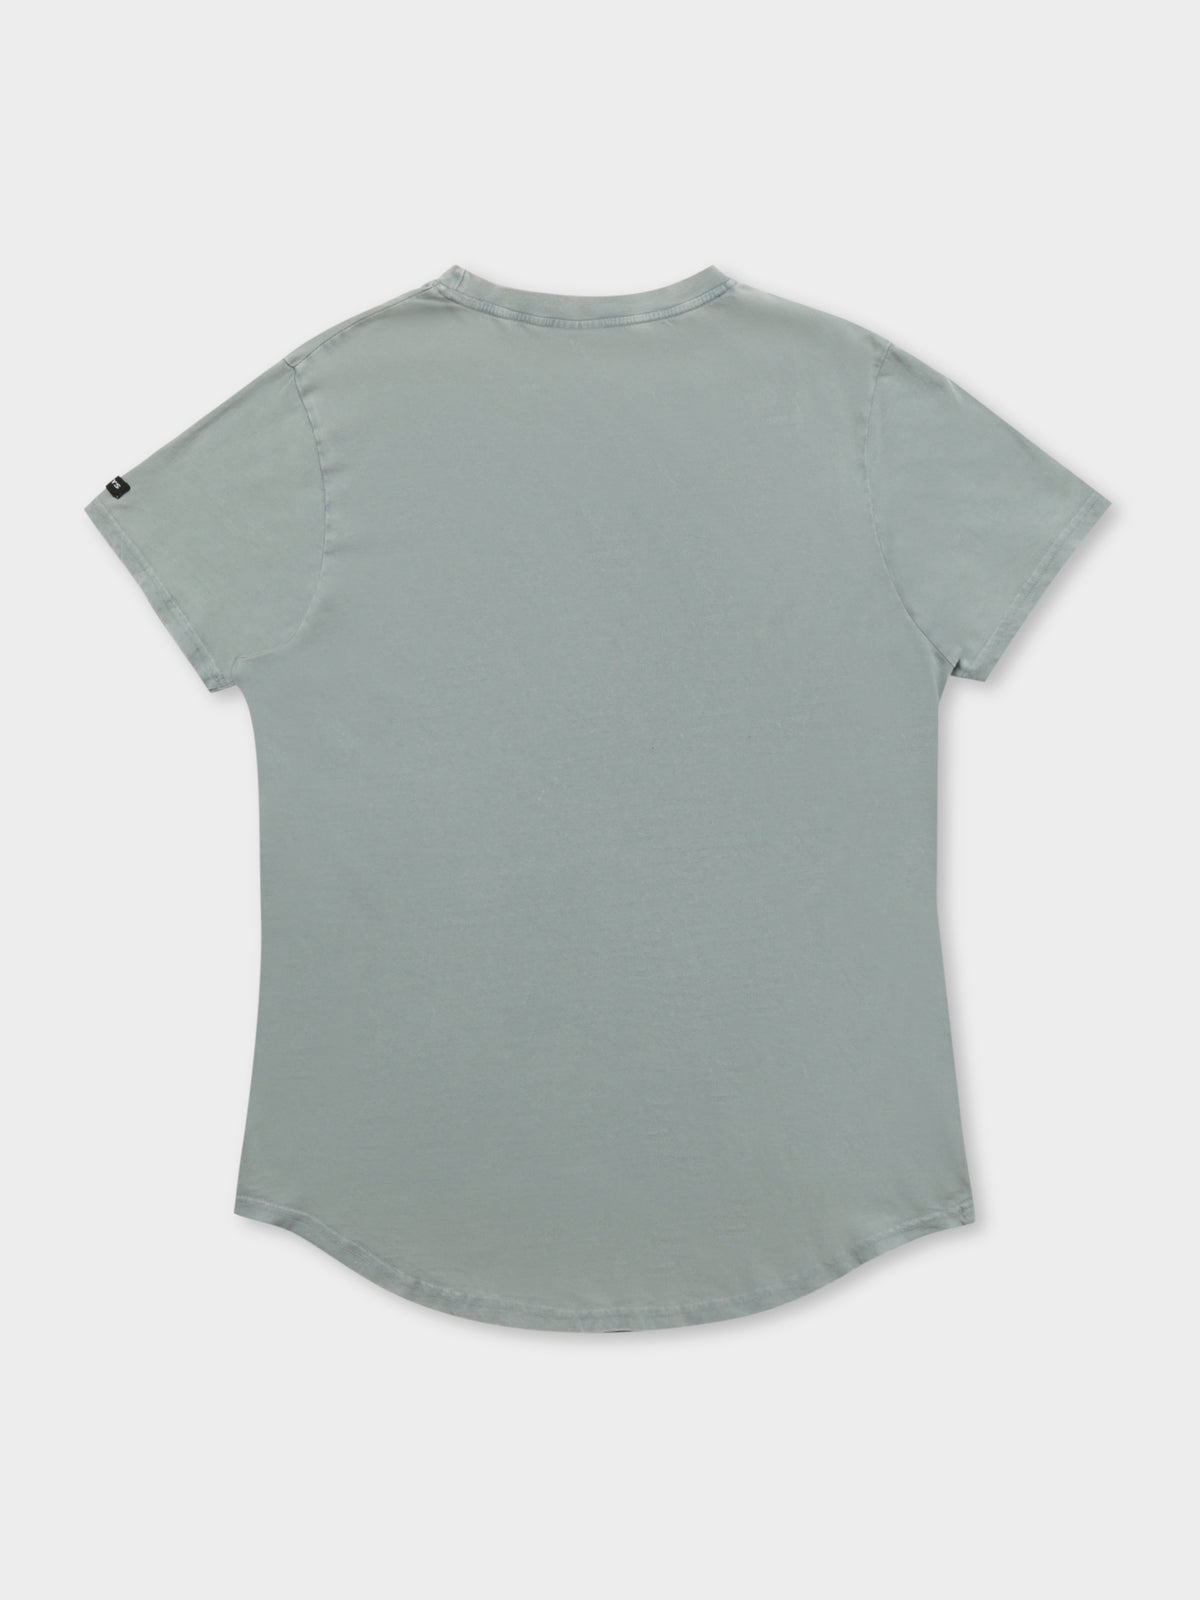 Calder Longline Curve T-Shirt in Frost Acid